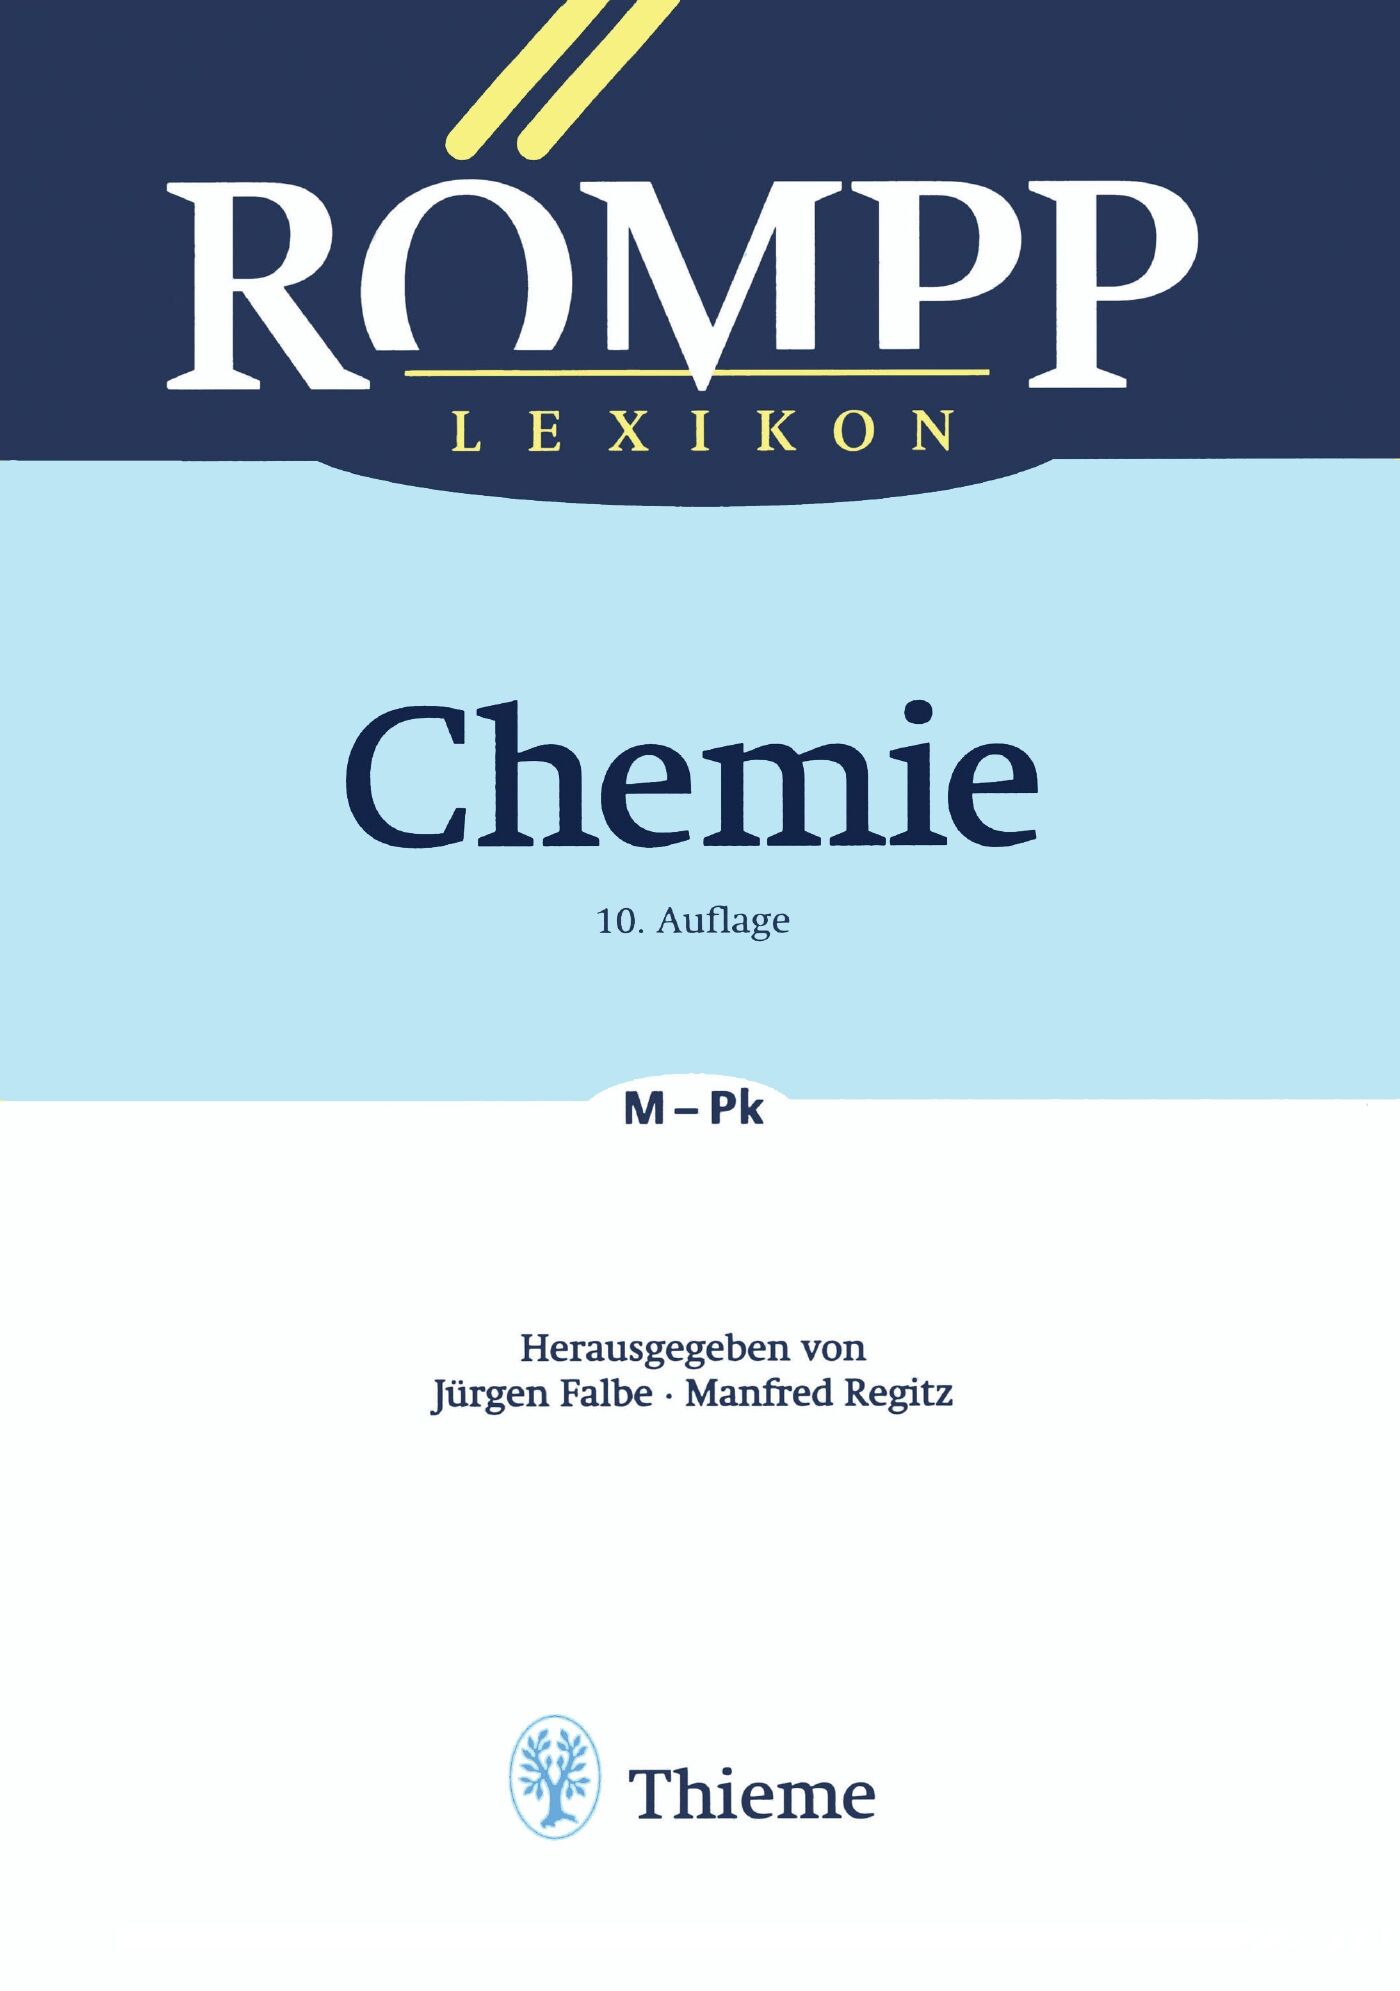 RÖMPP Lexikon Chemie, 10. Auflage, 1996-1999, 9783132000216